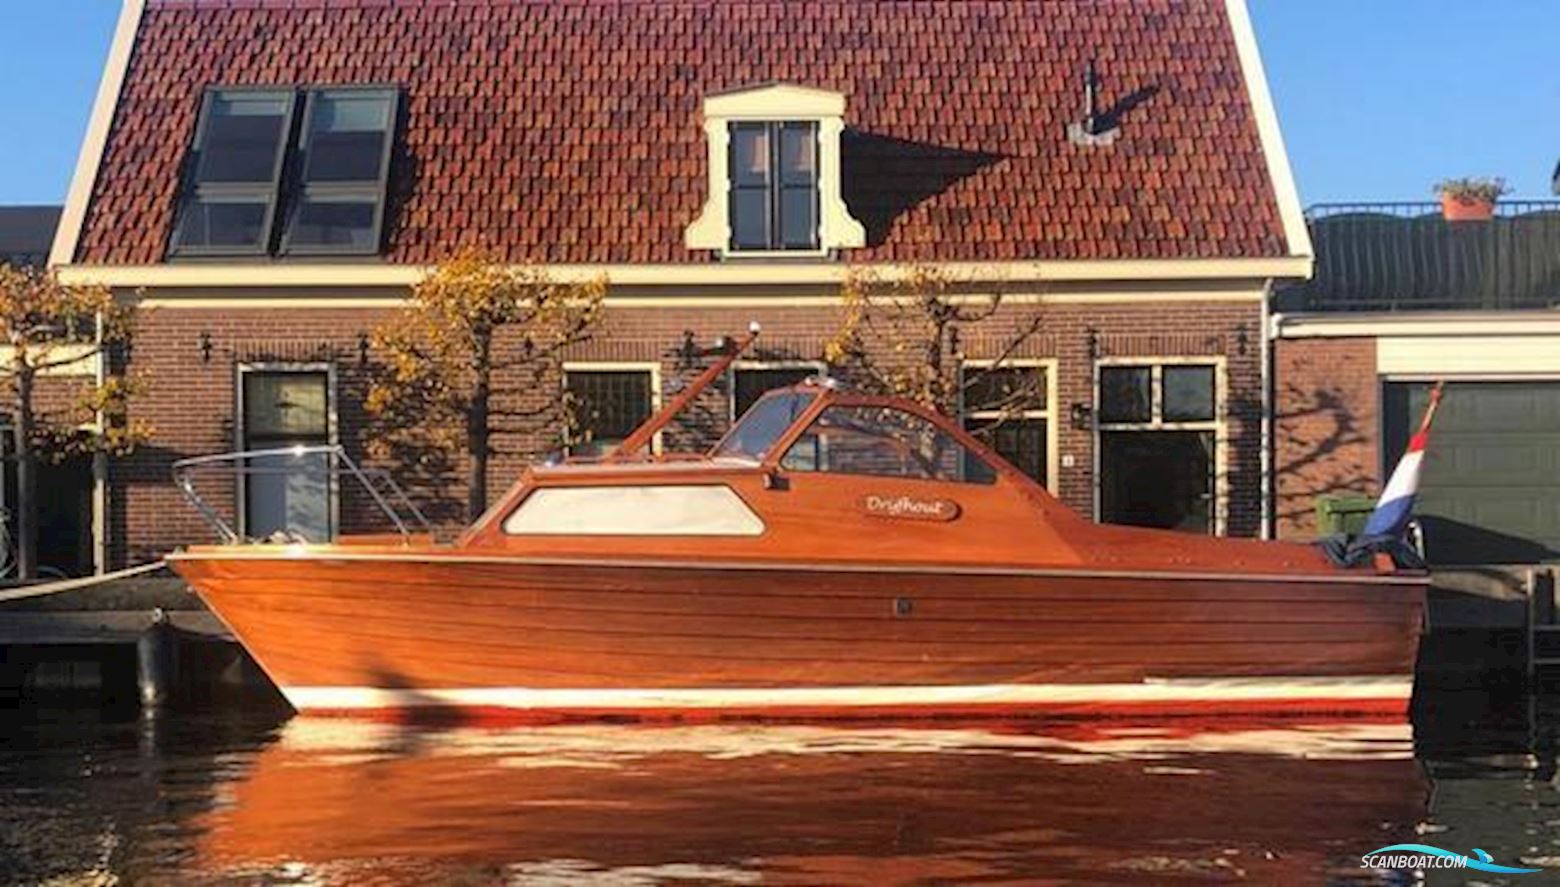 Motor Yacht Gamleby 7.50 OK Motorbåt 1965, med Volvo motor, Holland